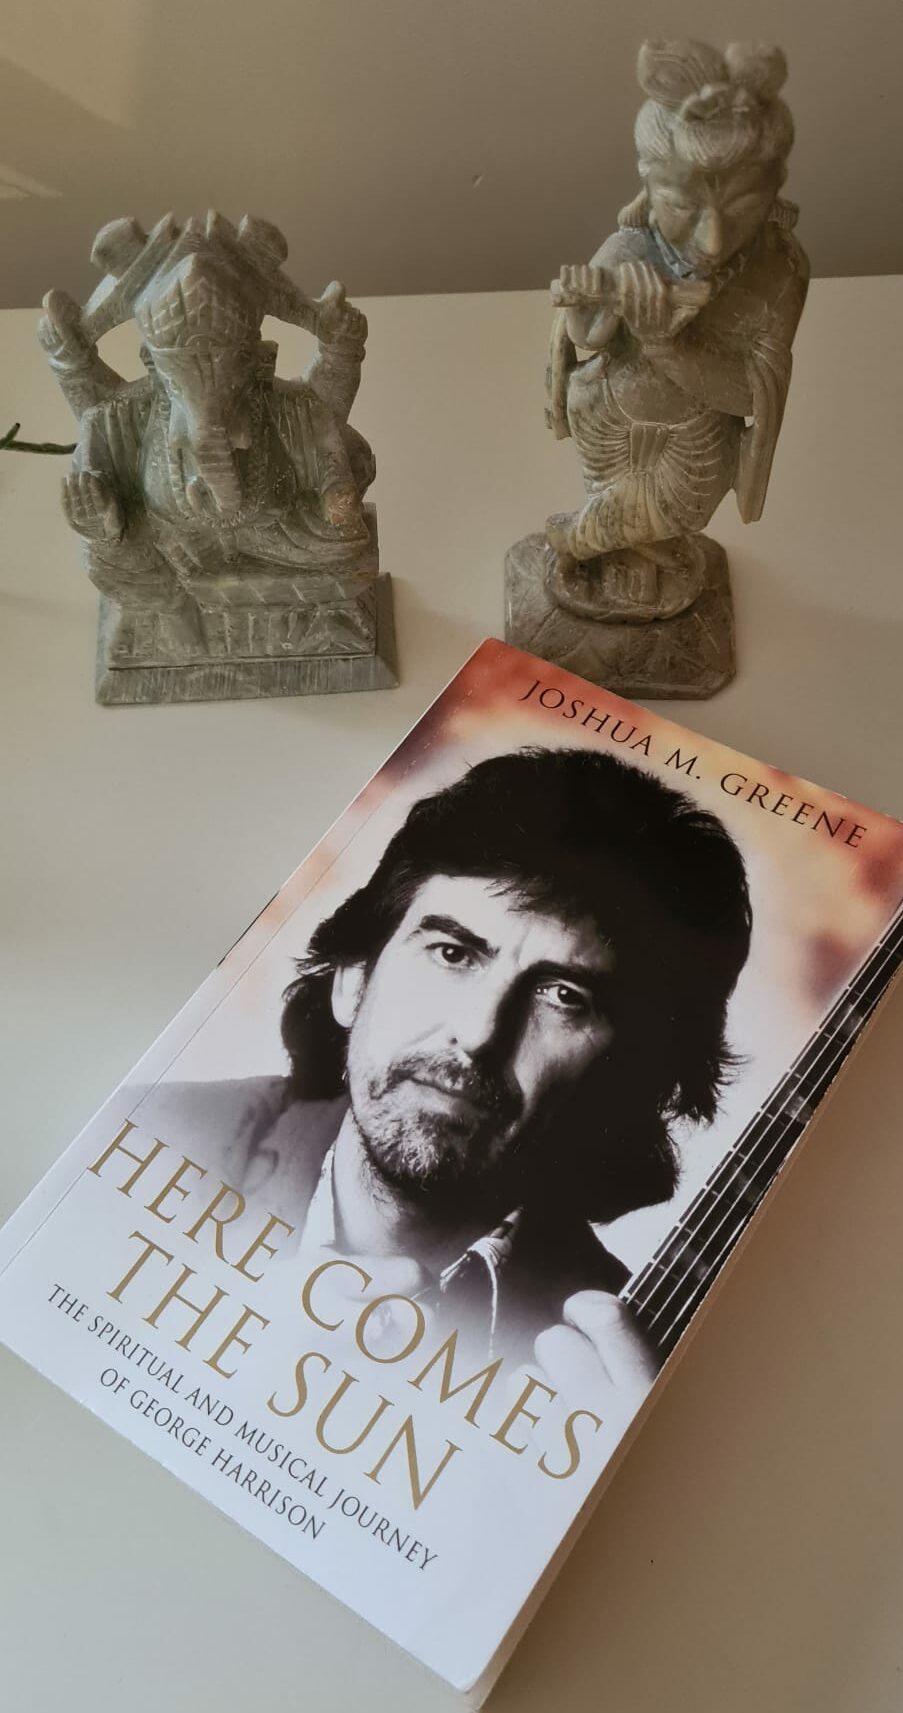 Boek Here Comes The Sun van Joshua M. Greene over George Harrison met daarbij een beeldje van Govinda en Ganesha.